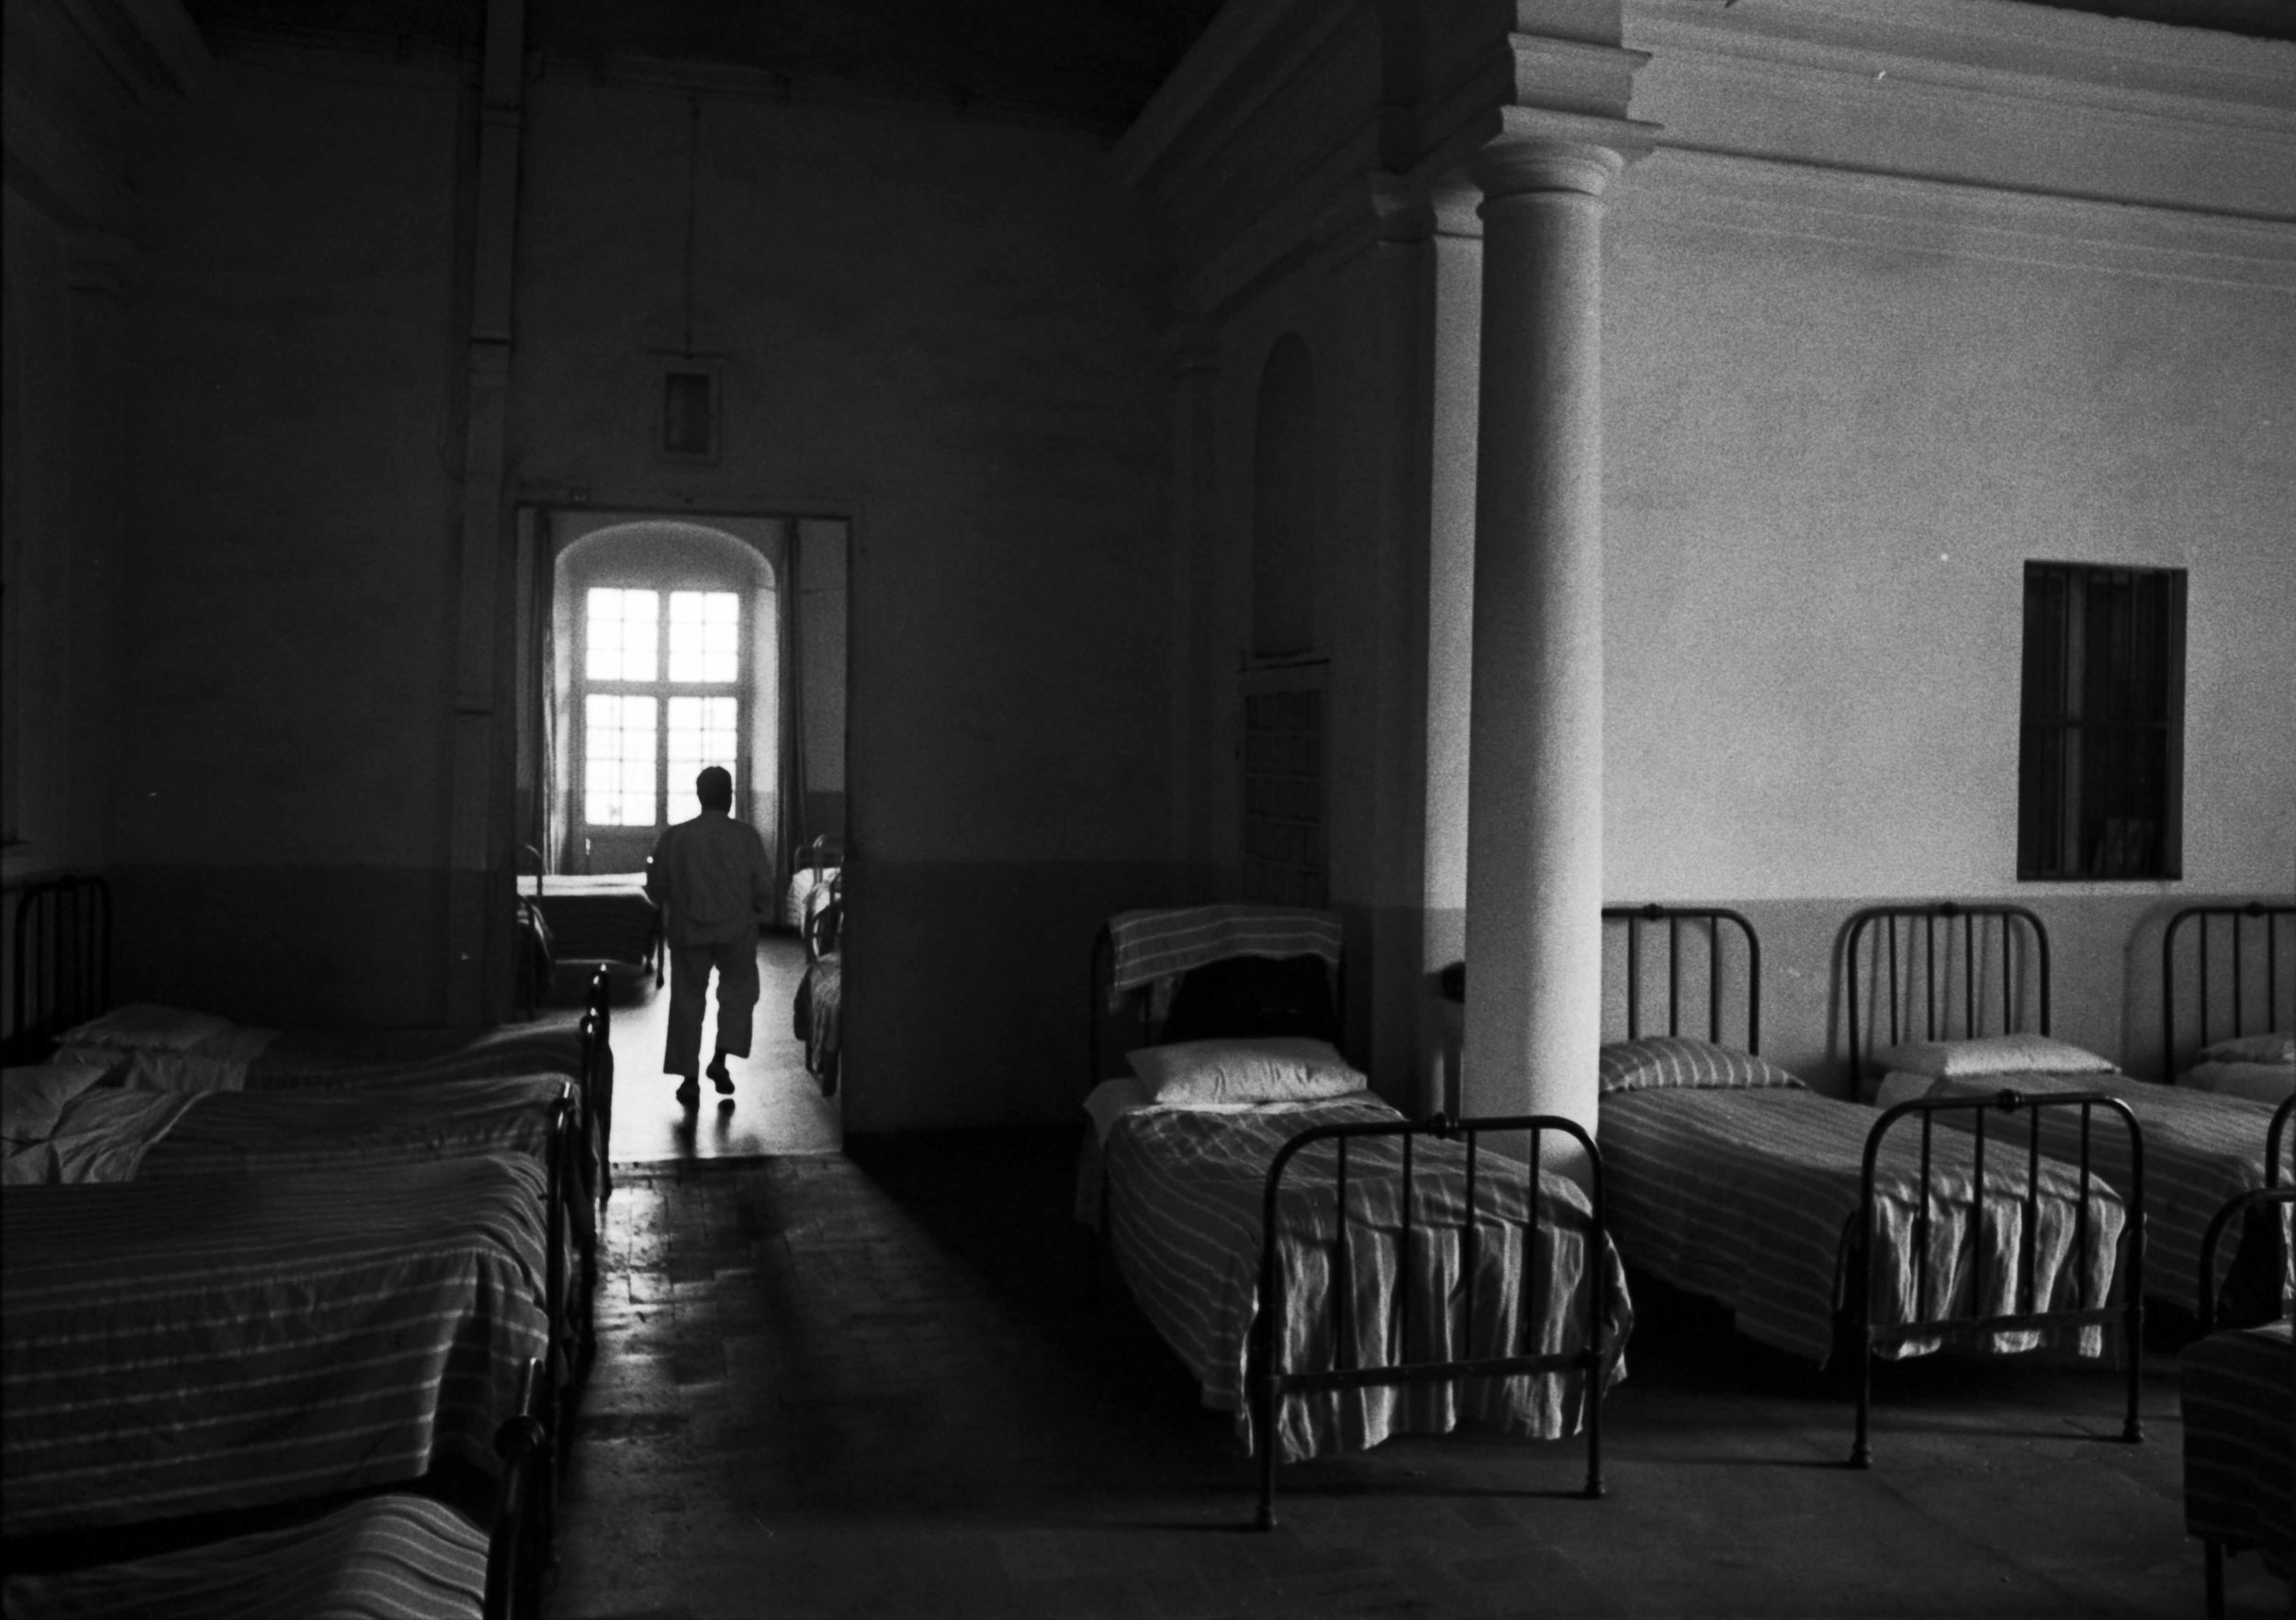   Ospedale psichiatrico. Parma, 1968.  